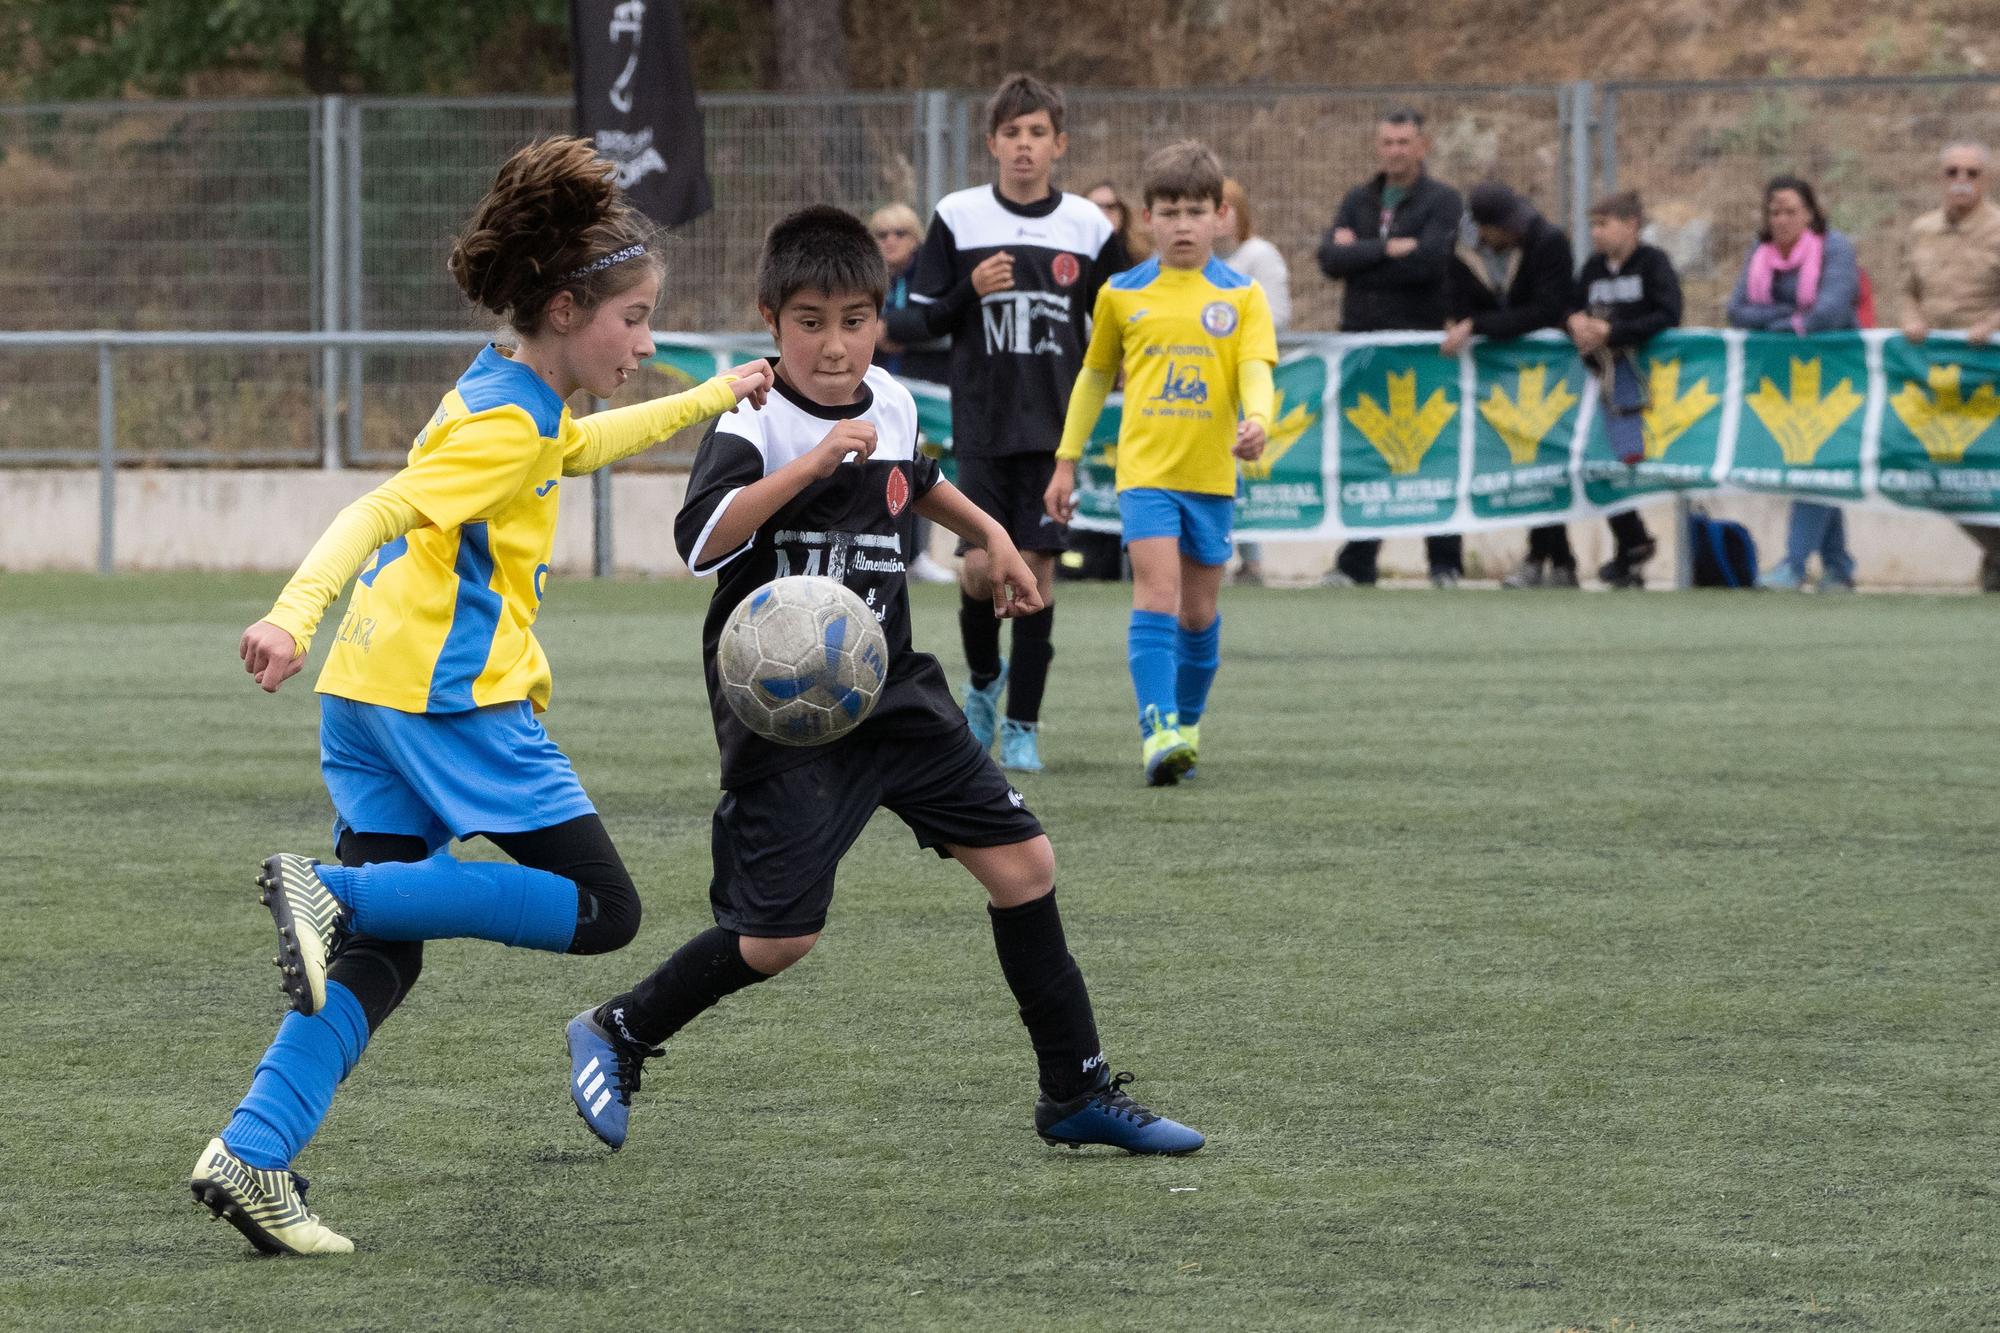 GALERIA | El Torneo del fútbol zamorano "Elvira Fernández", en juego en Valorio